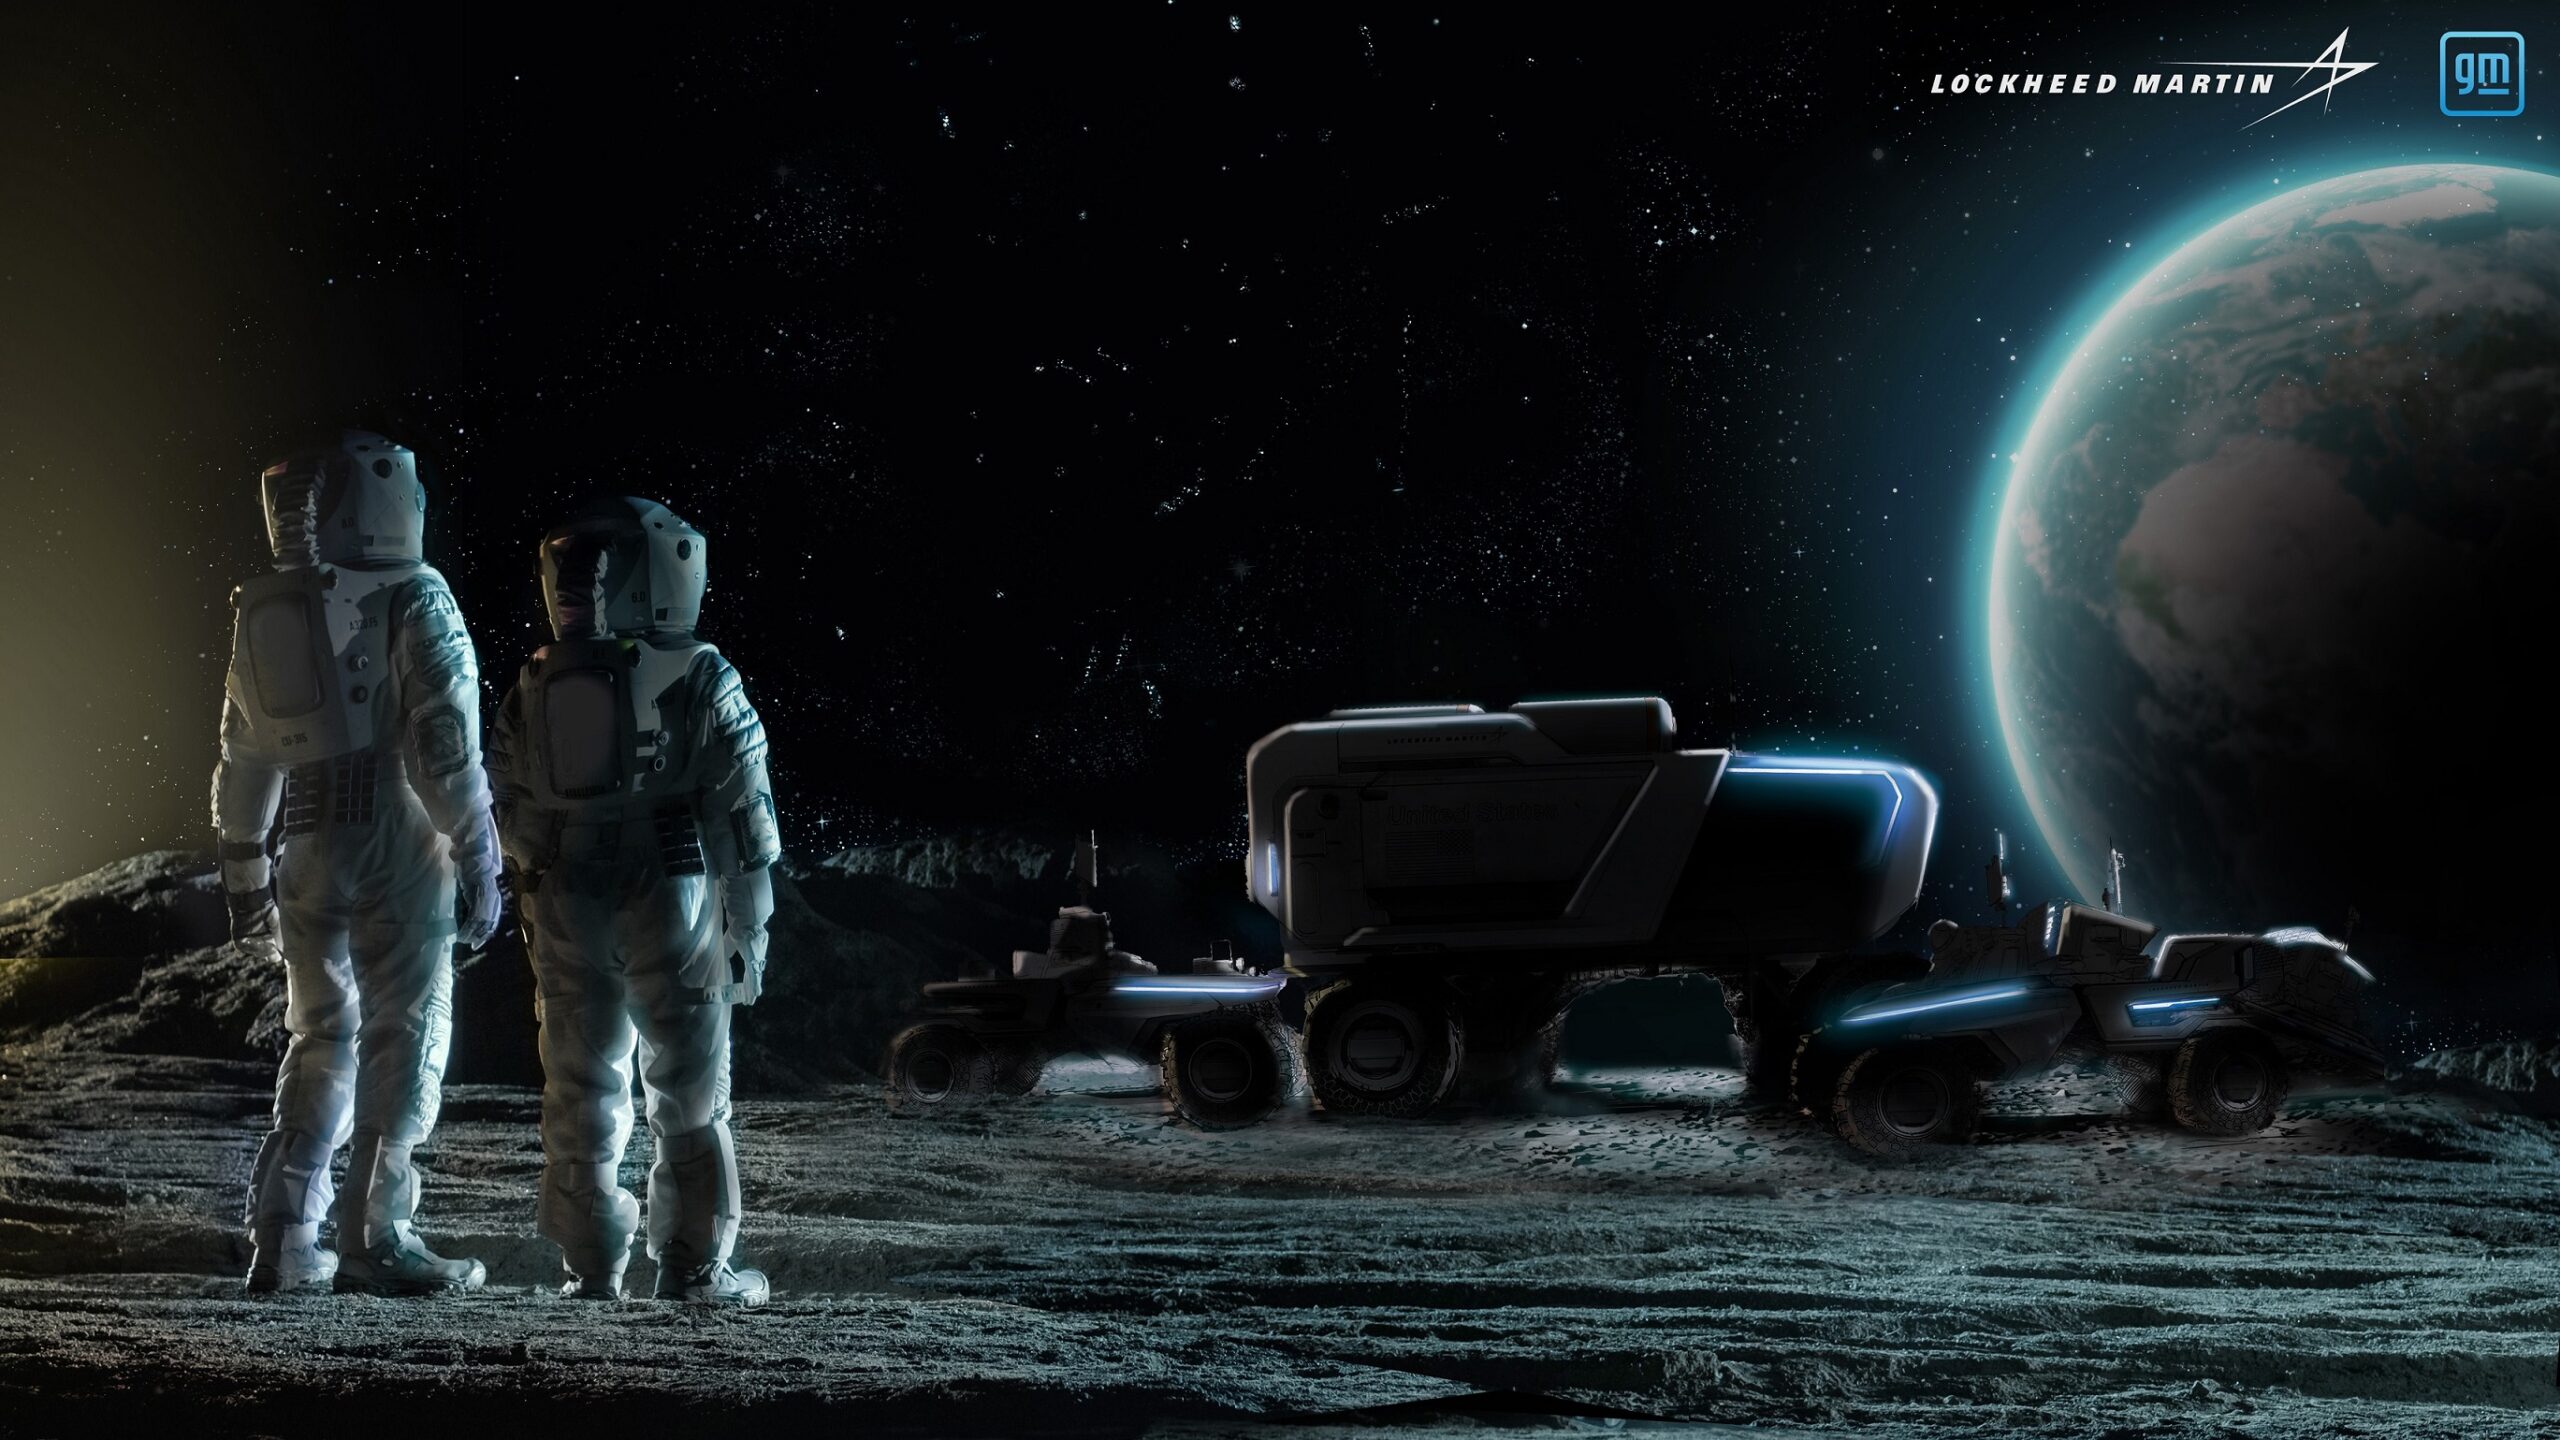 عربة قمرية جديدة تمكن روّاد الفضاء ضمن برنامج ’أرتميس‘ لدى ’ناسا‘ من استكشاف القمر بشكل أفضل